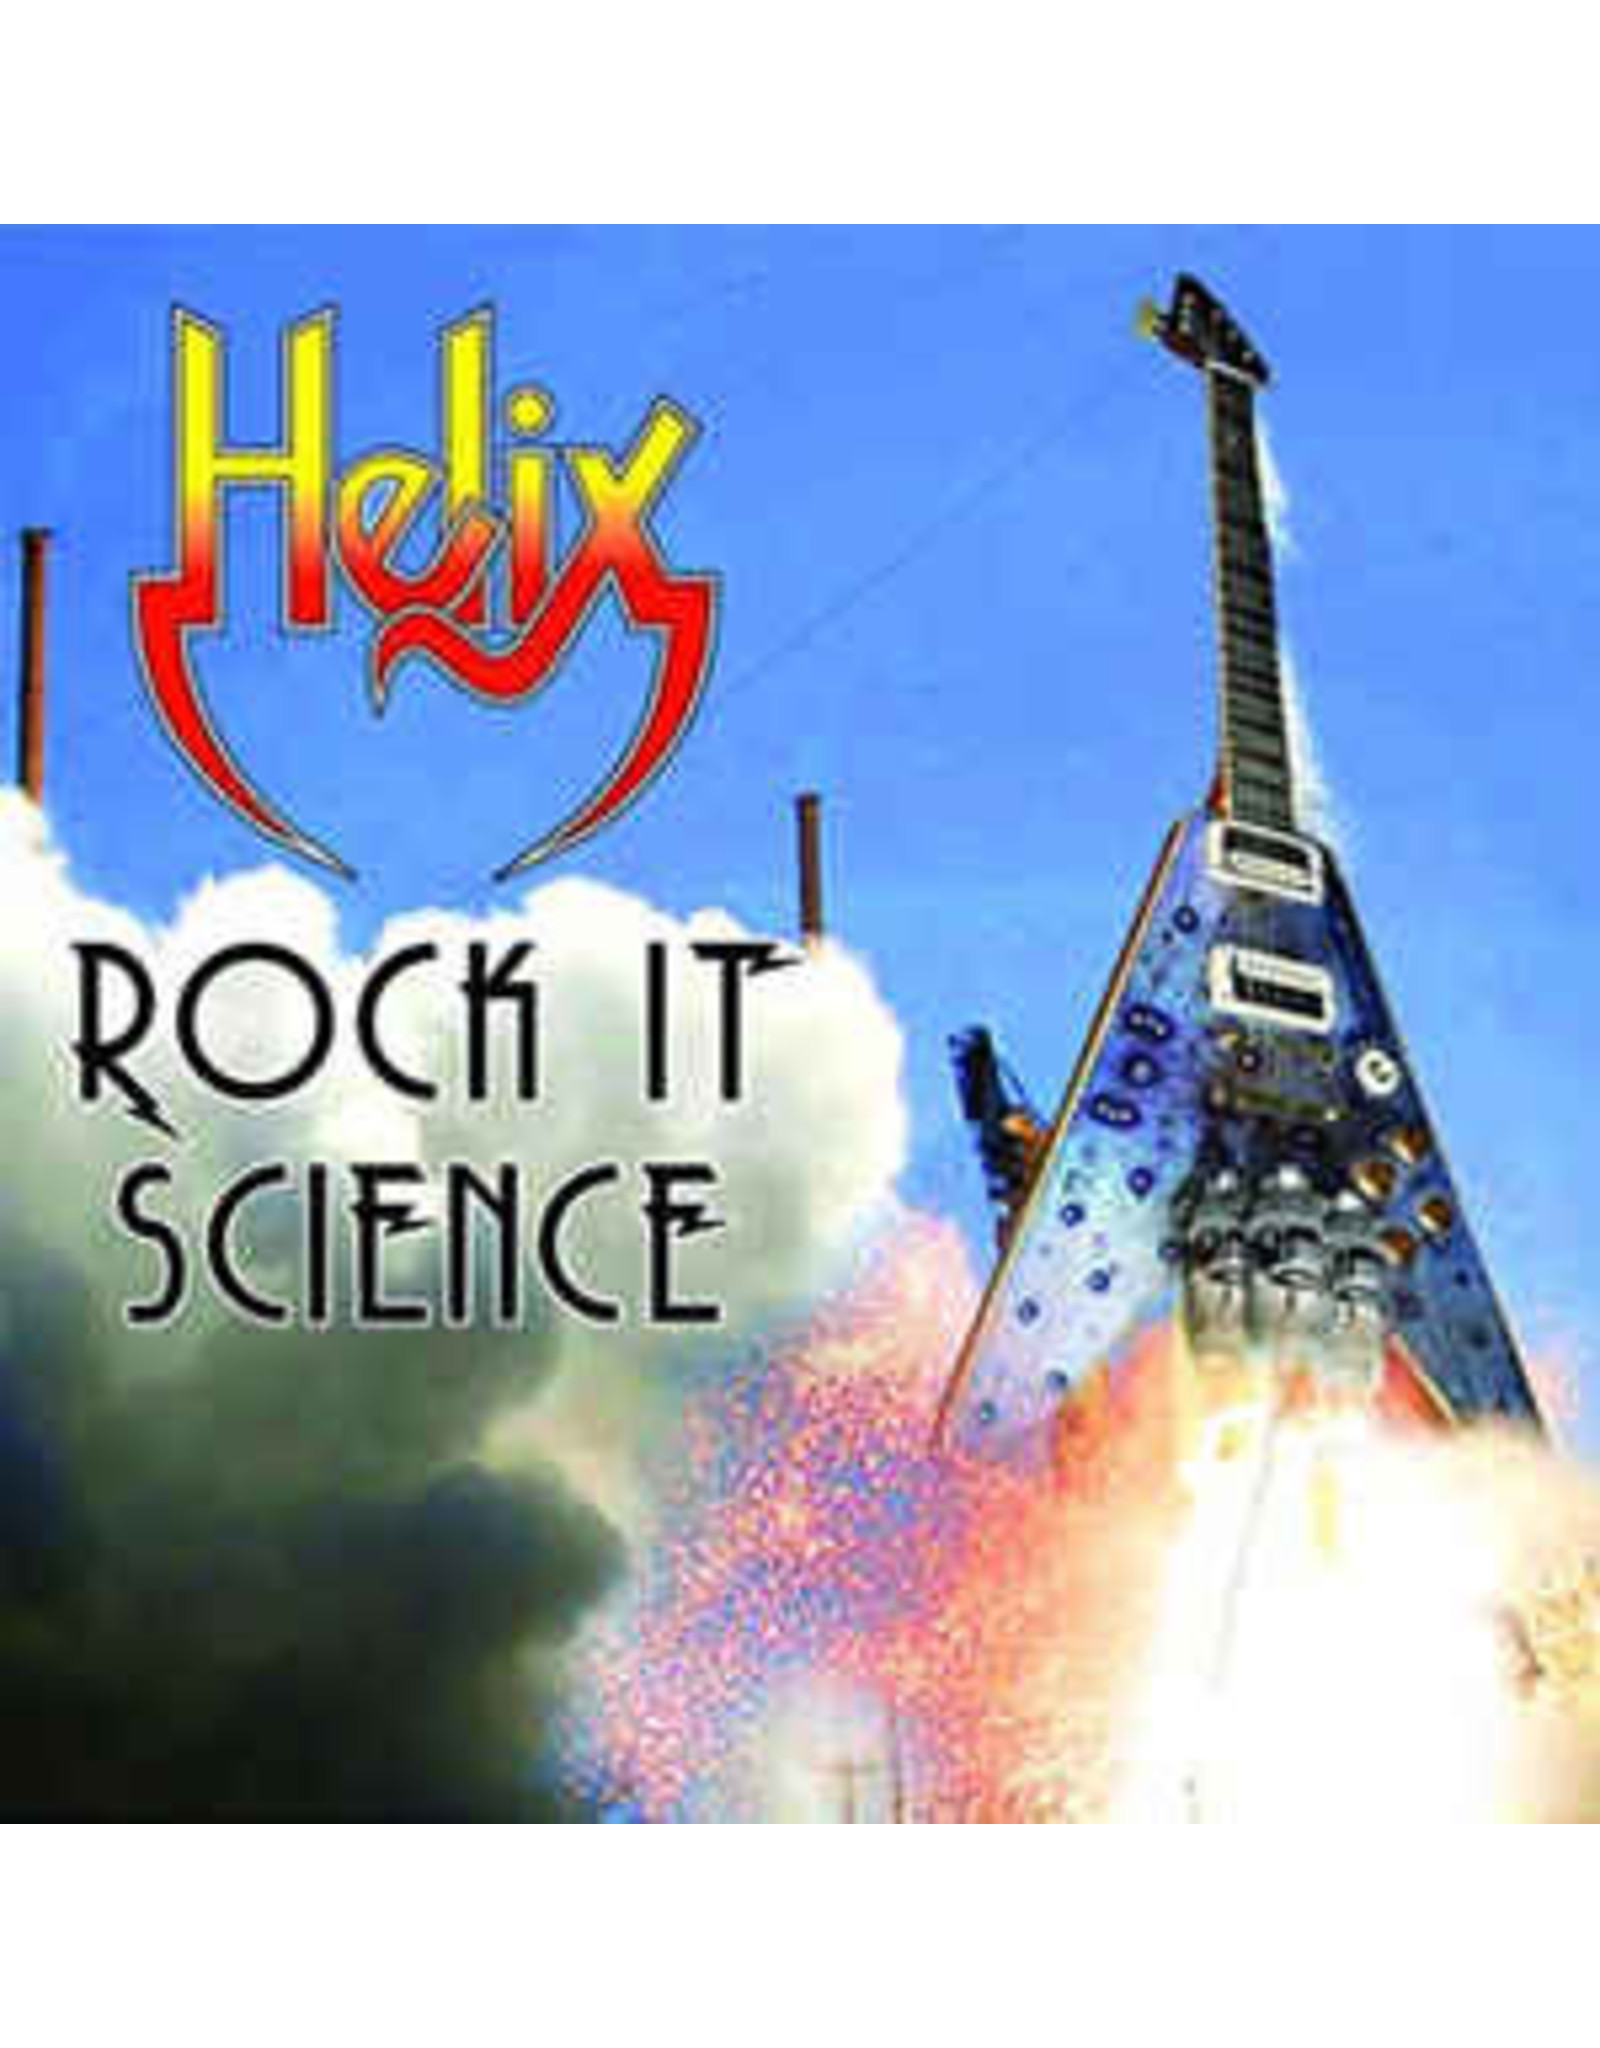 Helix - Rock It Science CD